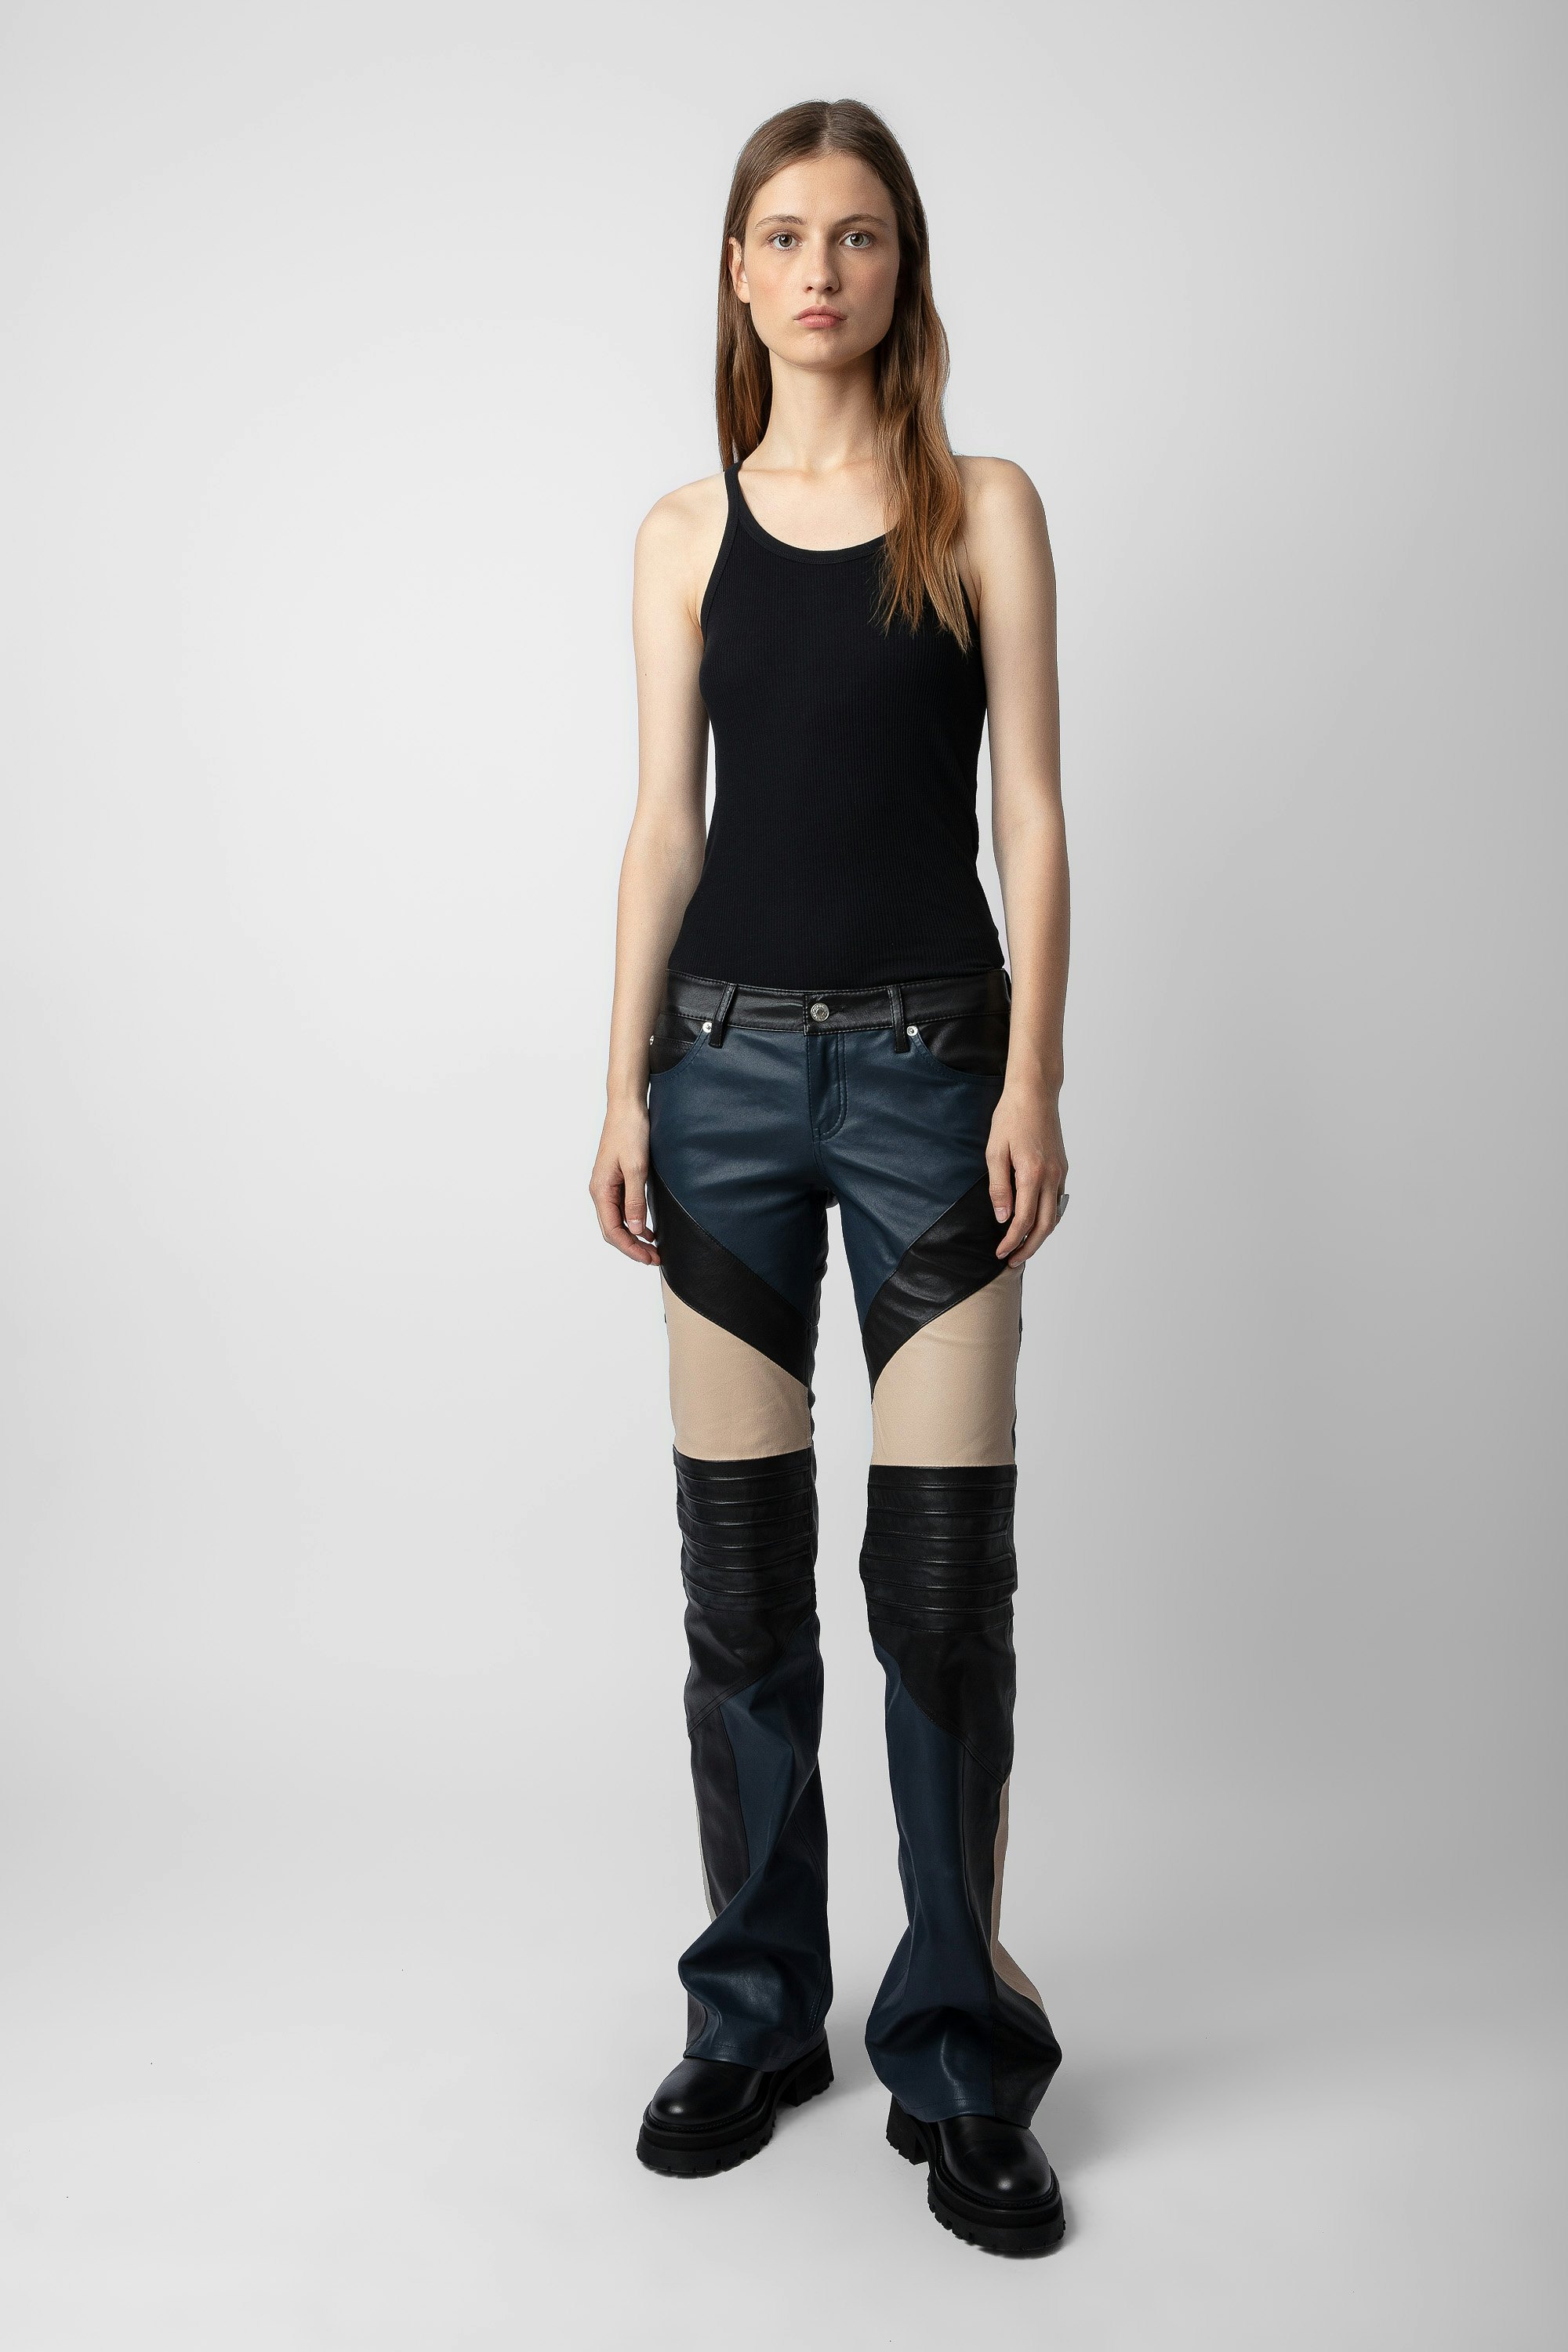 Pantaloni Paulin pelle - Pantaloni in pelle a contrasto neri con dettagli impunturati da donna.